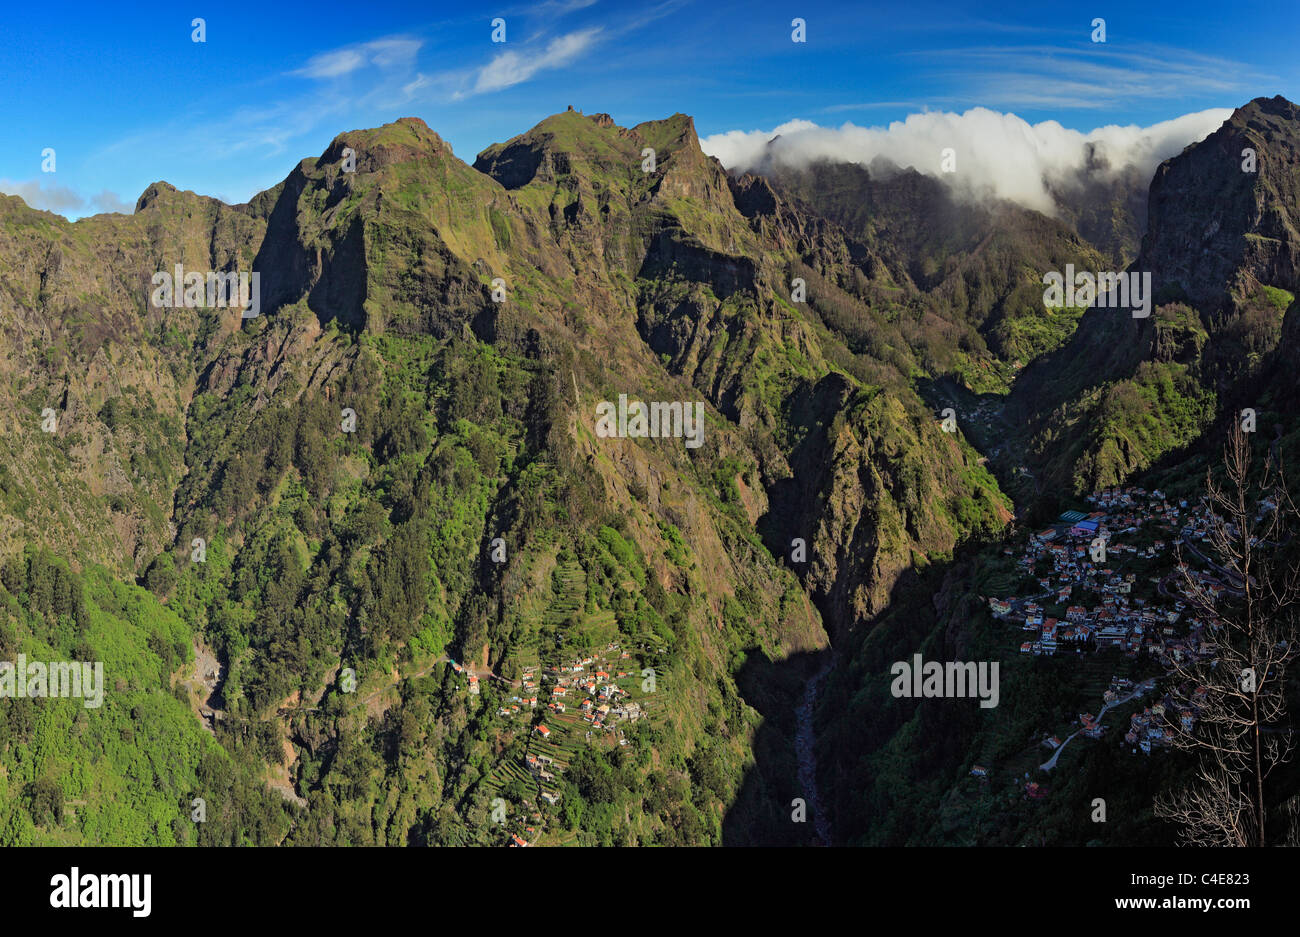 The mountain village of Curral das Freiras as seen from Eira do Serrado, Madeira. Stock Photo